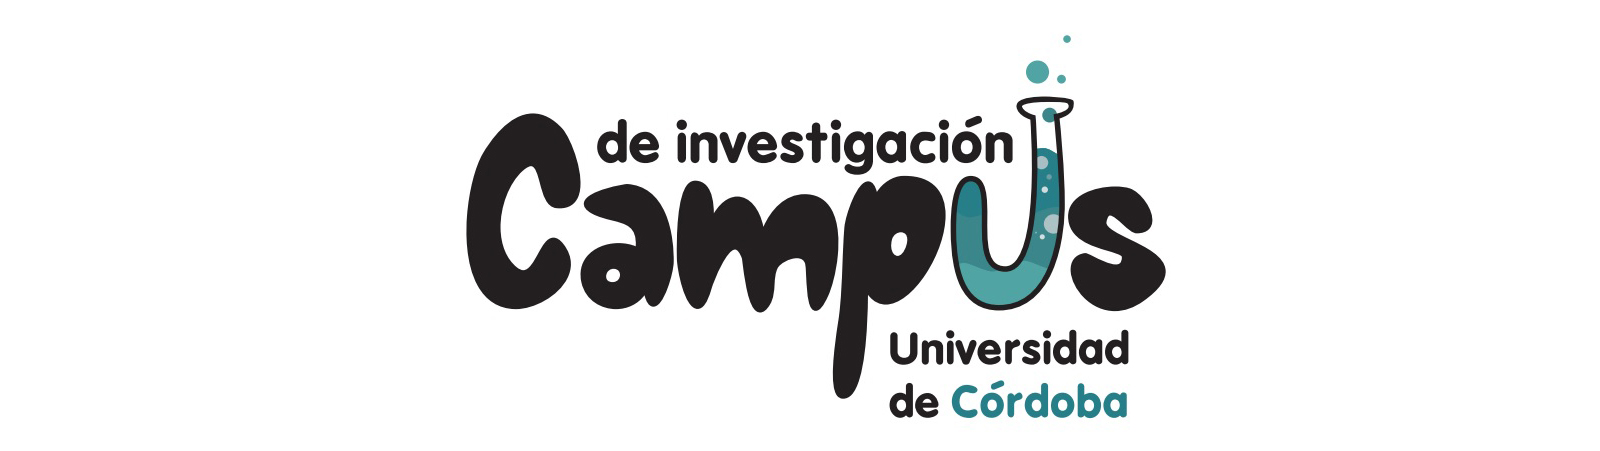 Campus de Investigación de la Universidad de Córdoba